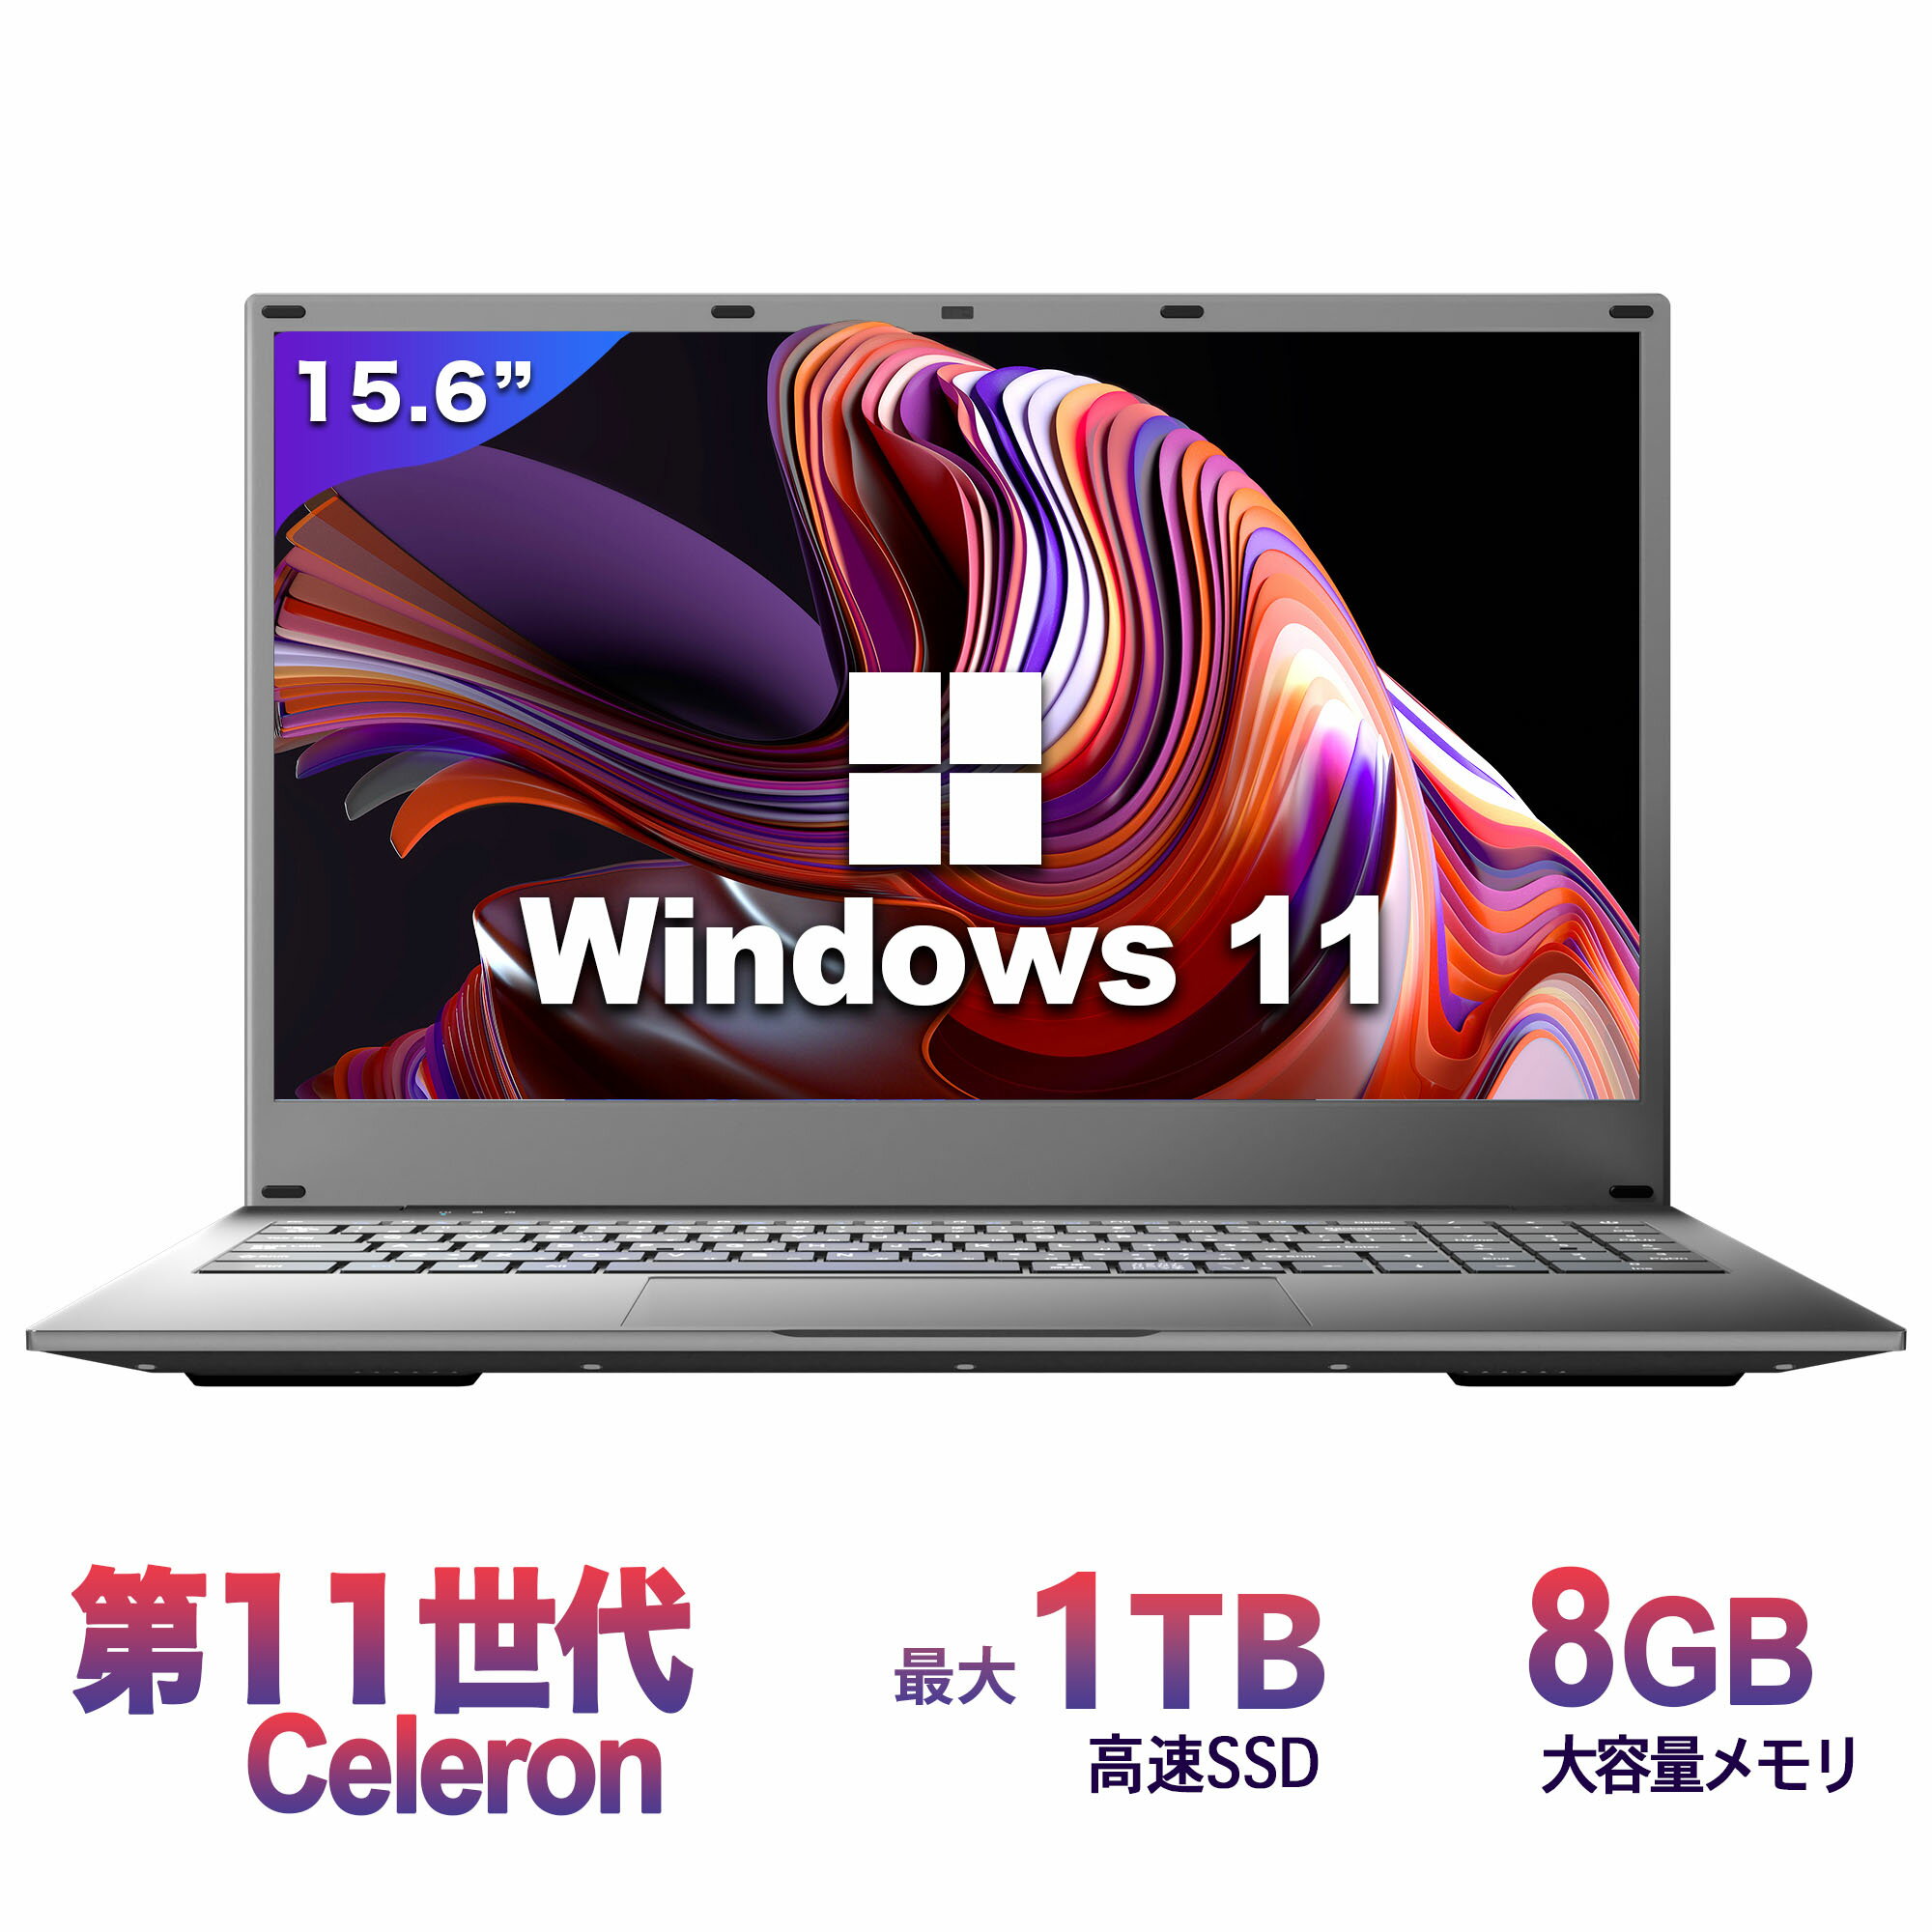 ノートパソコン 新品 Office付き 初心者向け Windows11 日本語キーボード Intel Celeron メモリ 8GB 高速SSD 256GB 15.6型液晶 Webカメラ zoom 10キー USB 3.0 miniHDMI 無線機能 Bluetooth 超…